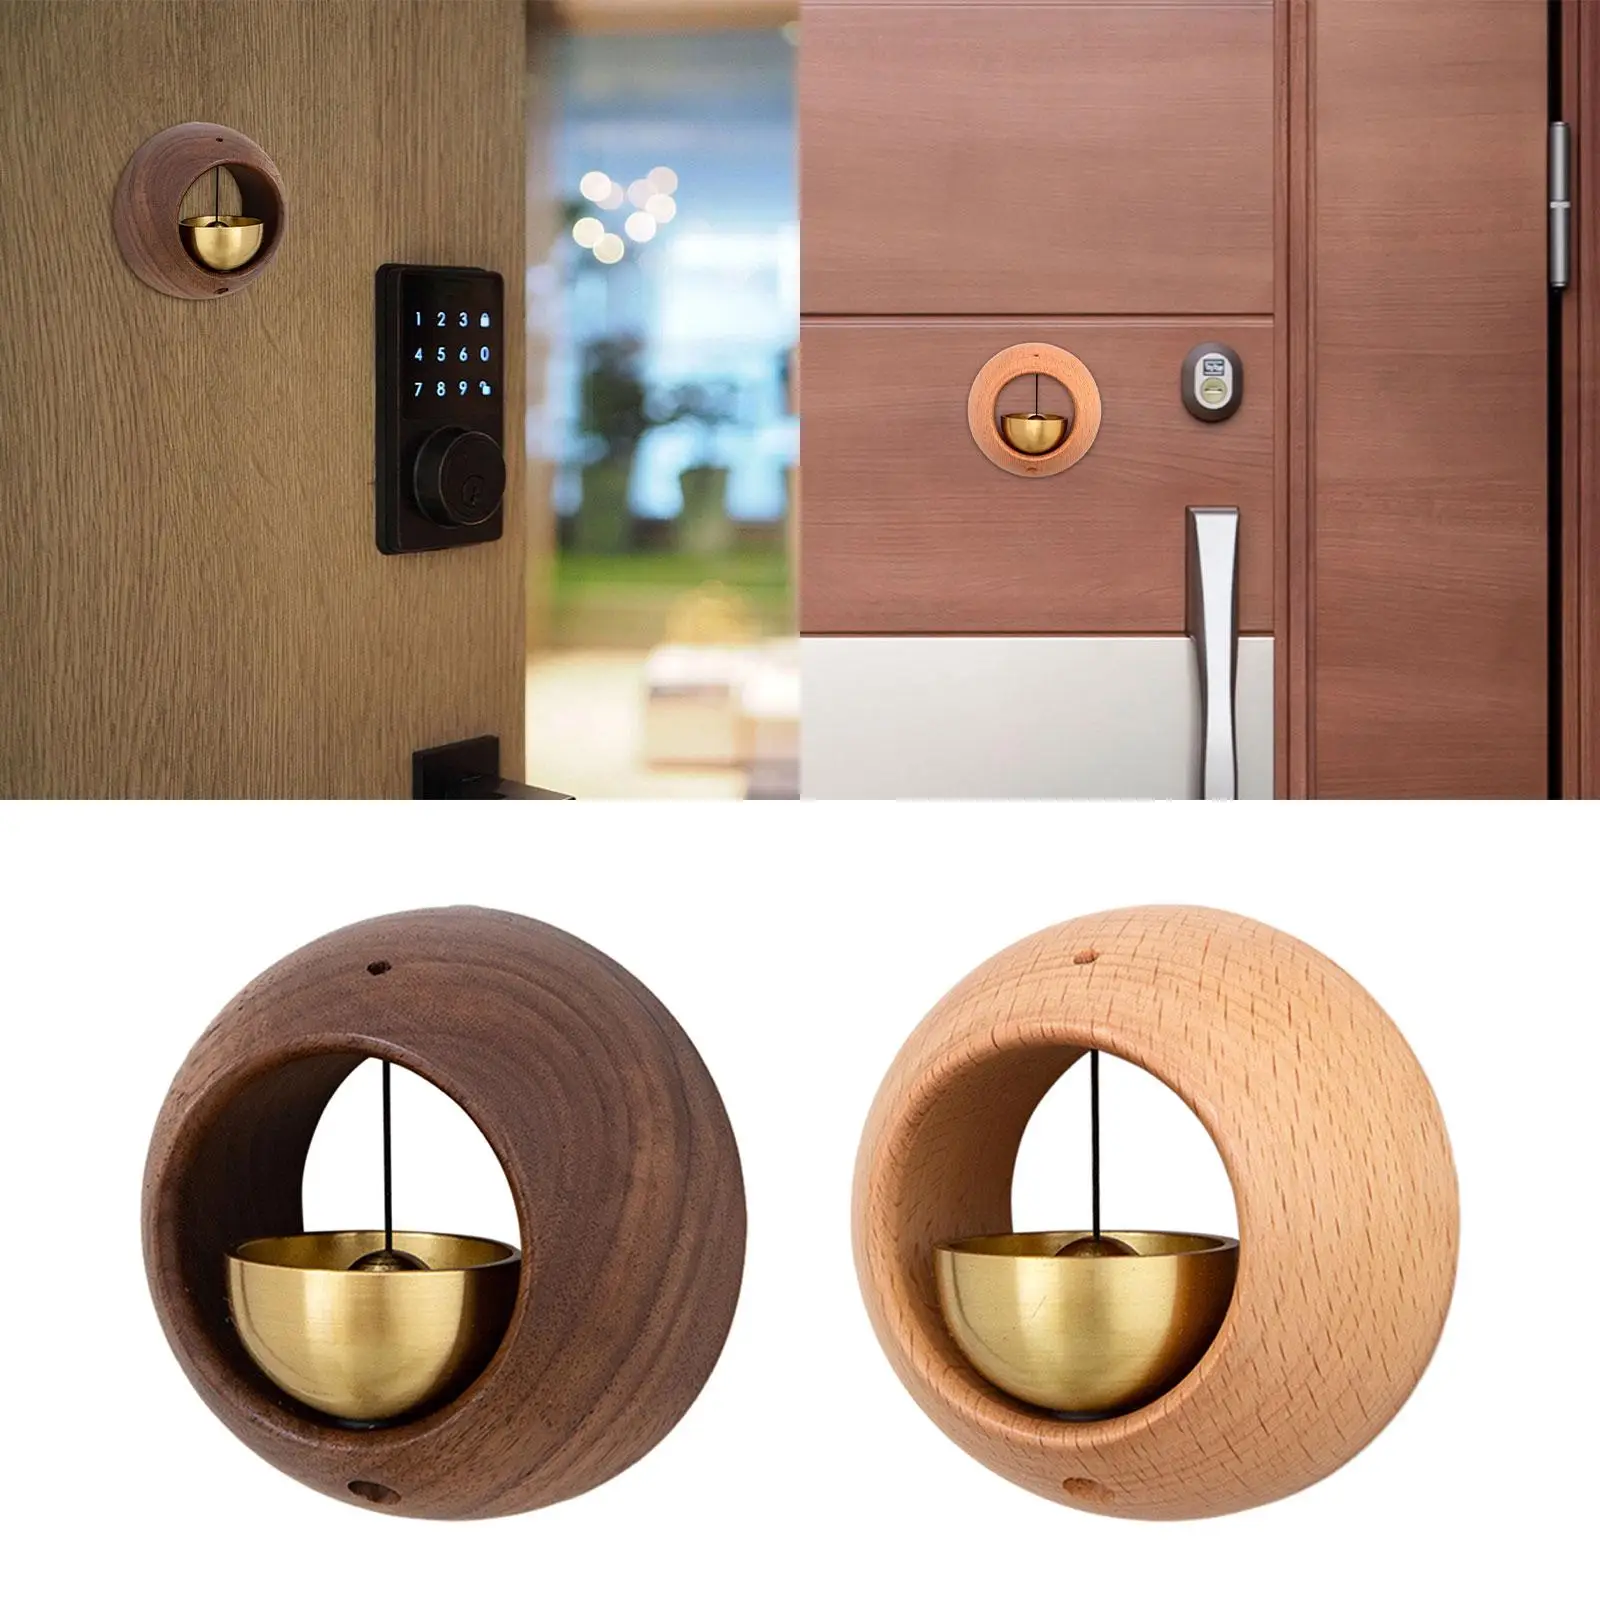 Shopkeepers Bell for Door Opening Small Doorbell for Home Fridge Front Door